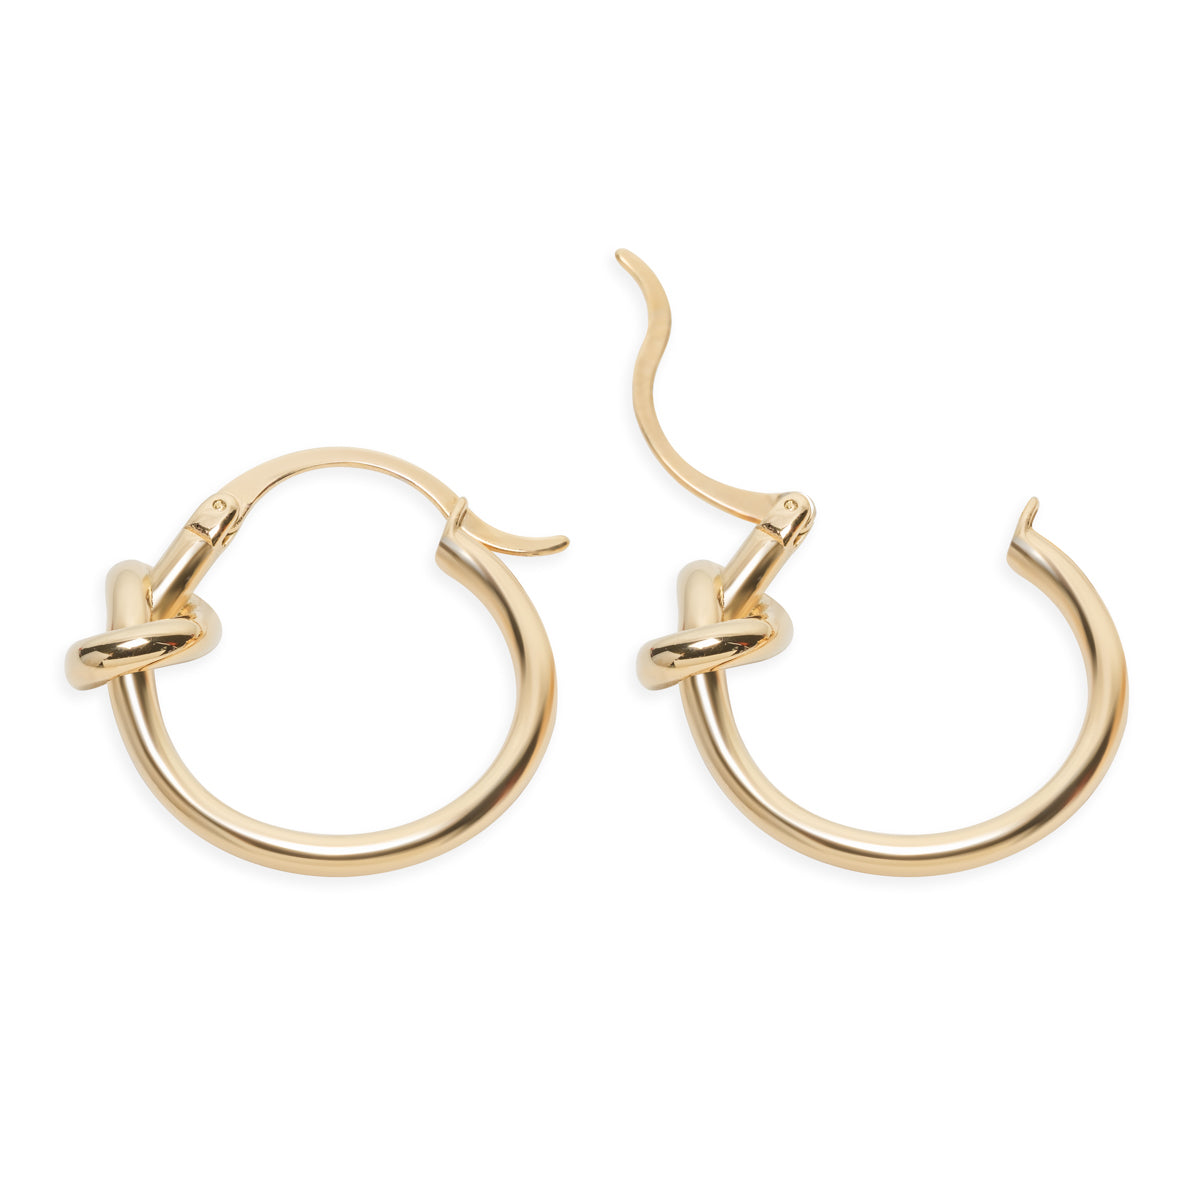 Gold Knot Hoop Earrings - Simply Whispers